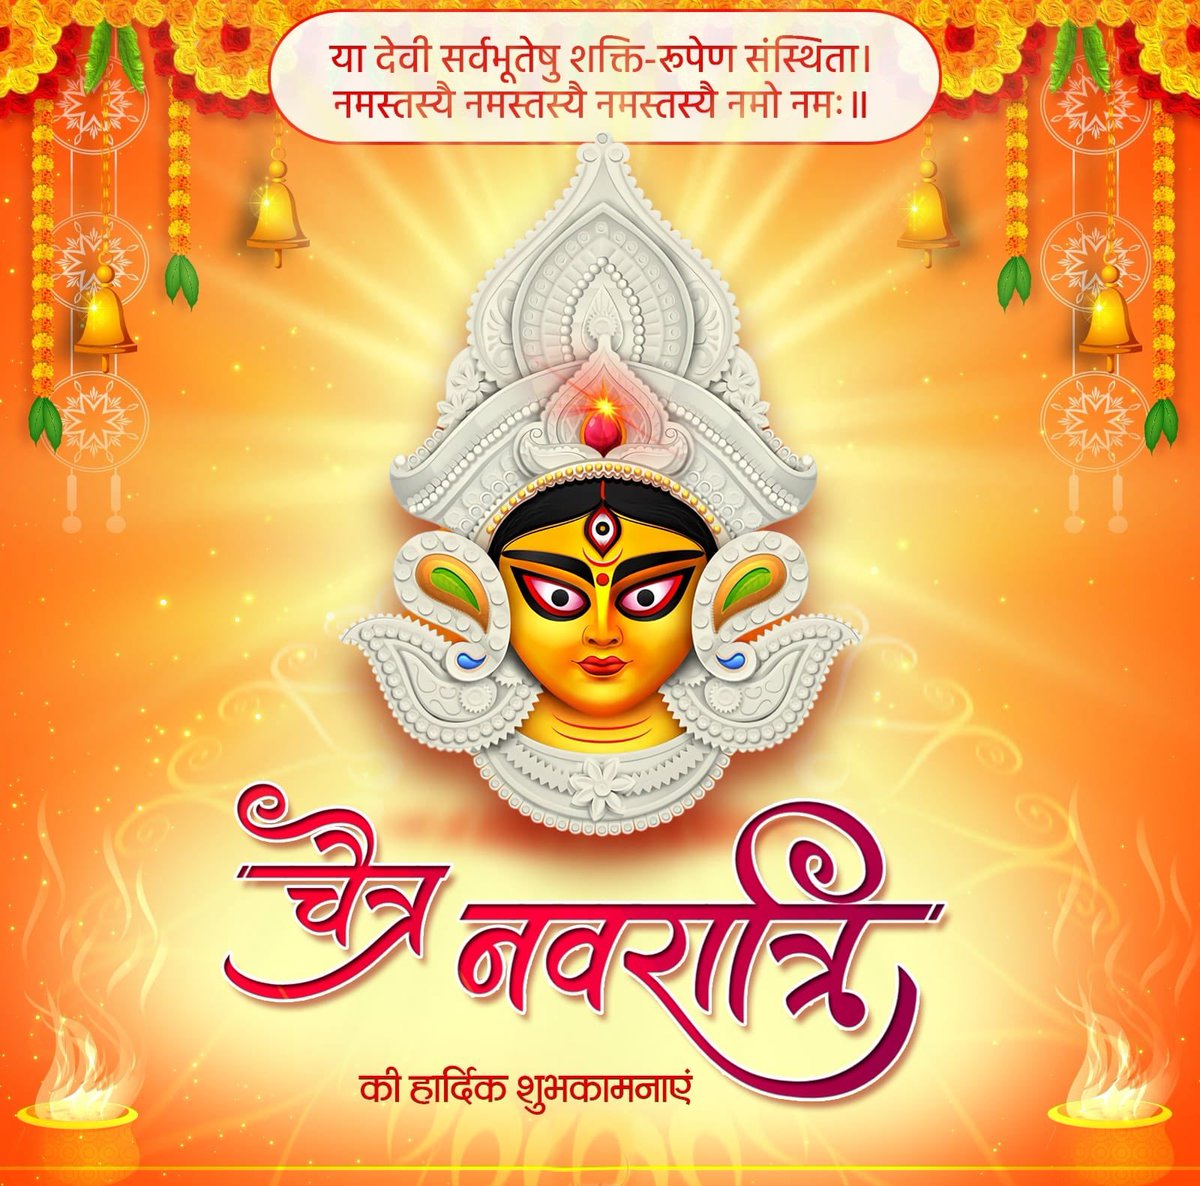 नव संवत्सर और चैत्र नवरात्रि की बहुत-बहुत बधाई। मेरी कामना है कि यह नया वर्ष हर किसी के लिए सुख-समृद्धि और आरोग्य से परिपूर्ण हो।